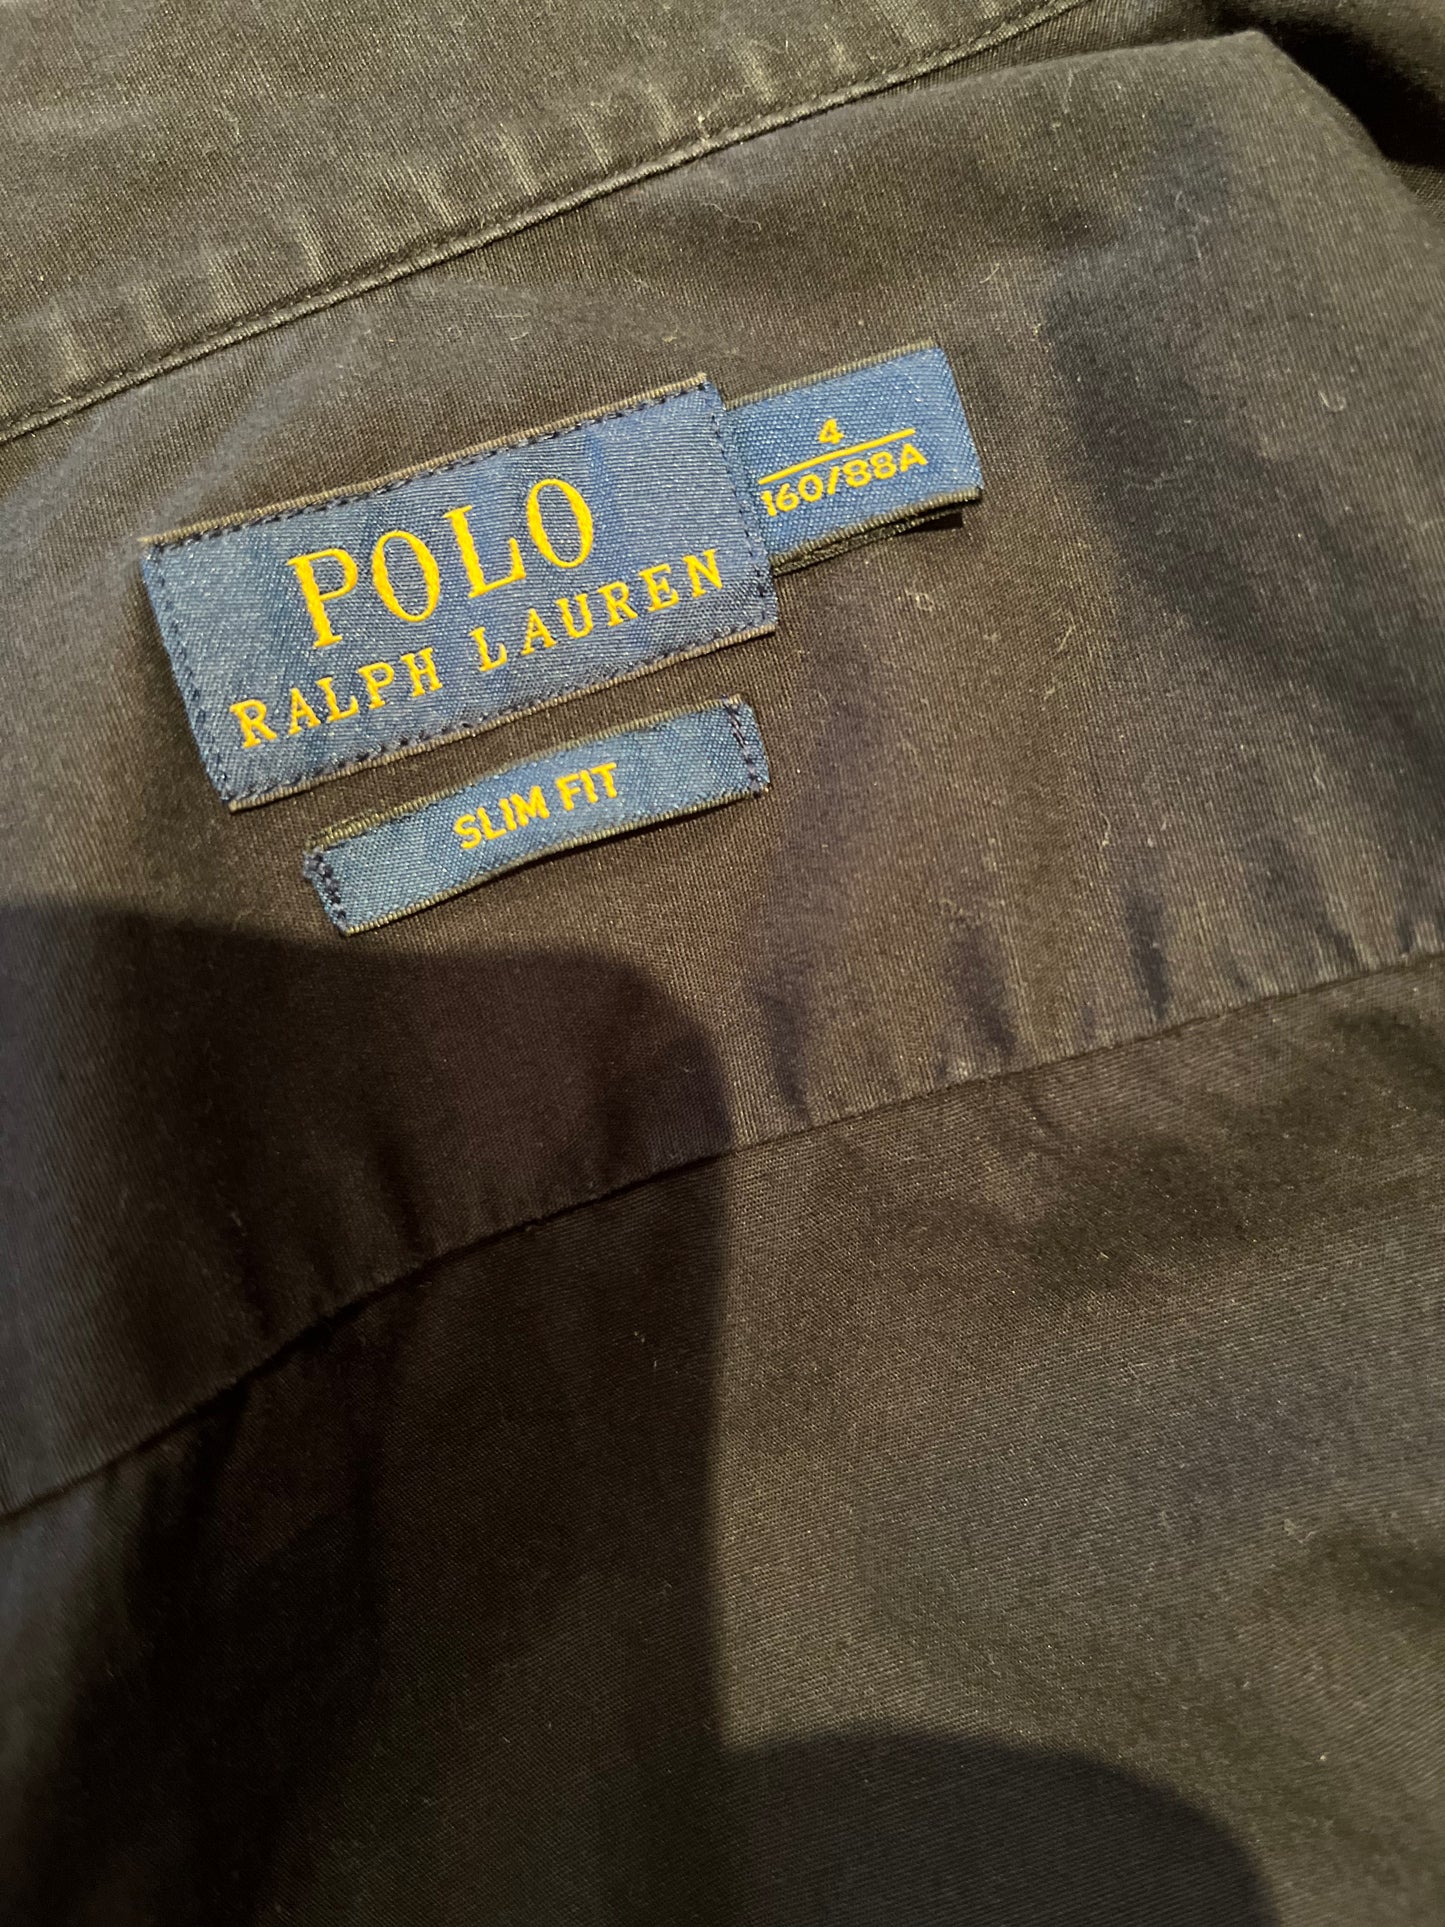 Polo Ralph Lauren Women’s 100% Cotton Black Shirt Size 4 Slim Fit